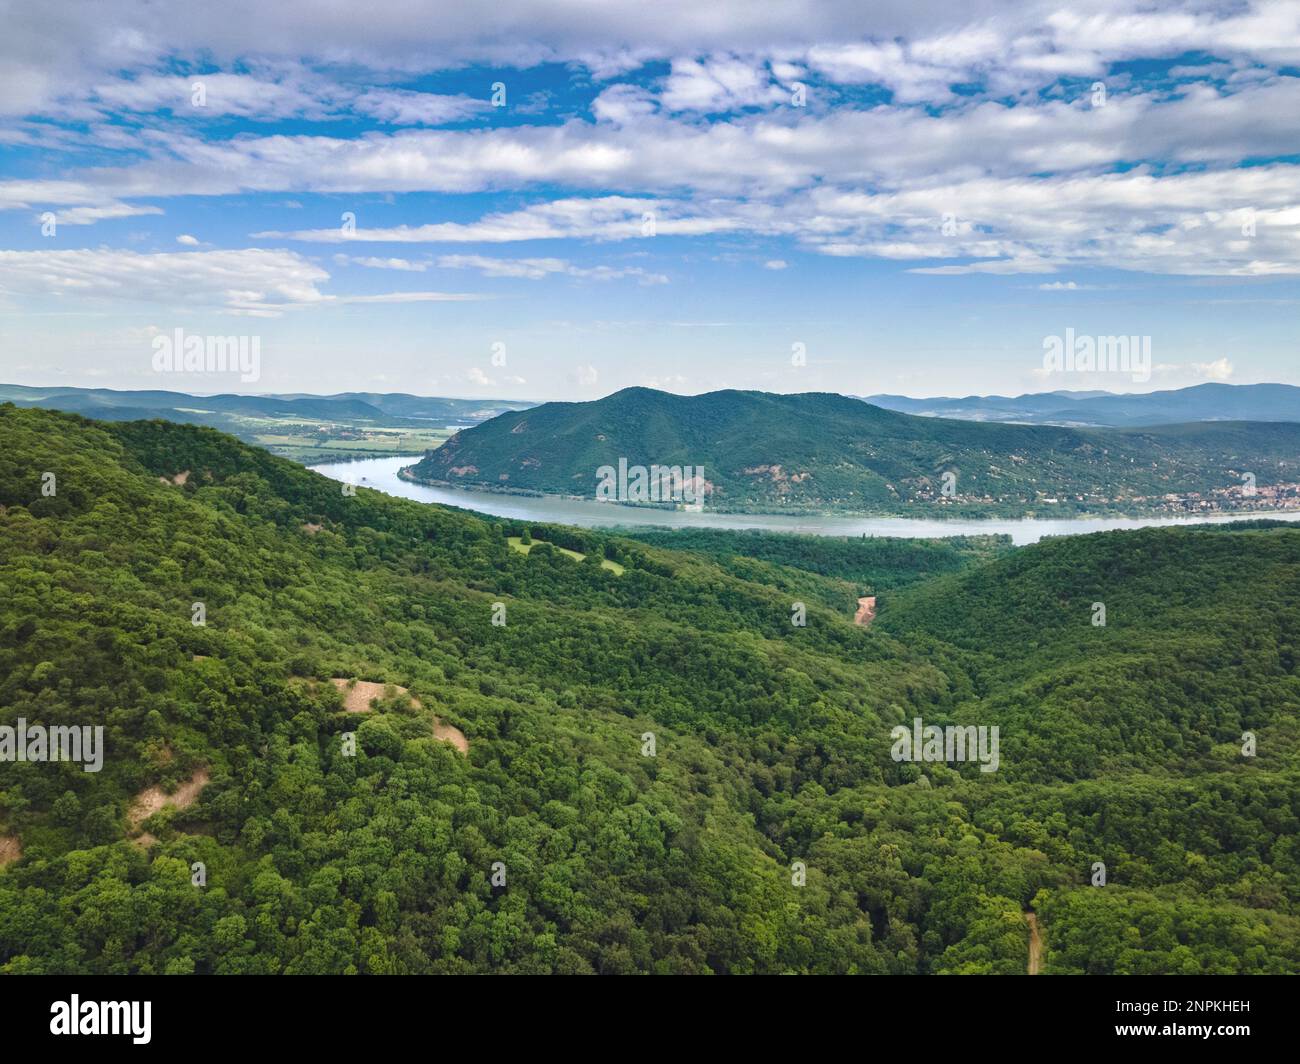 Prise de vue aérienne au-dessus des montagnes de Visegrád avec une vue magnifique sur le coude du Danube, Pilisszentlászló, Hongrie Banque D'Images